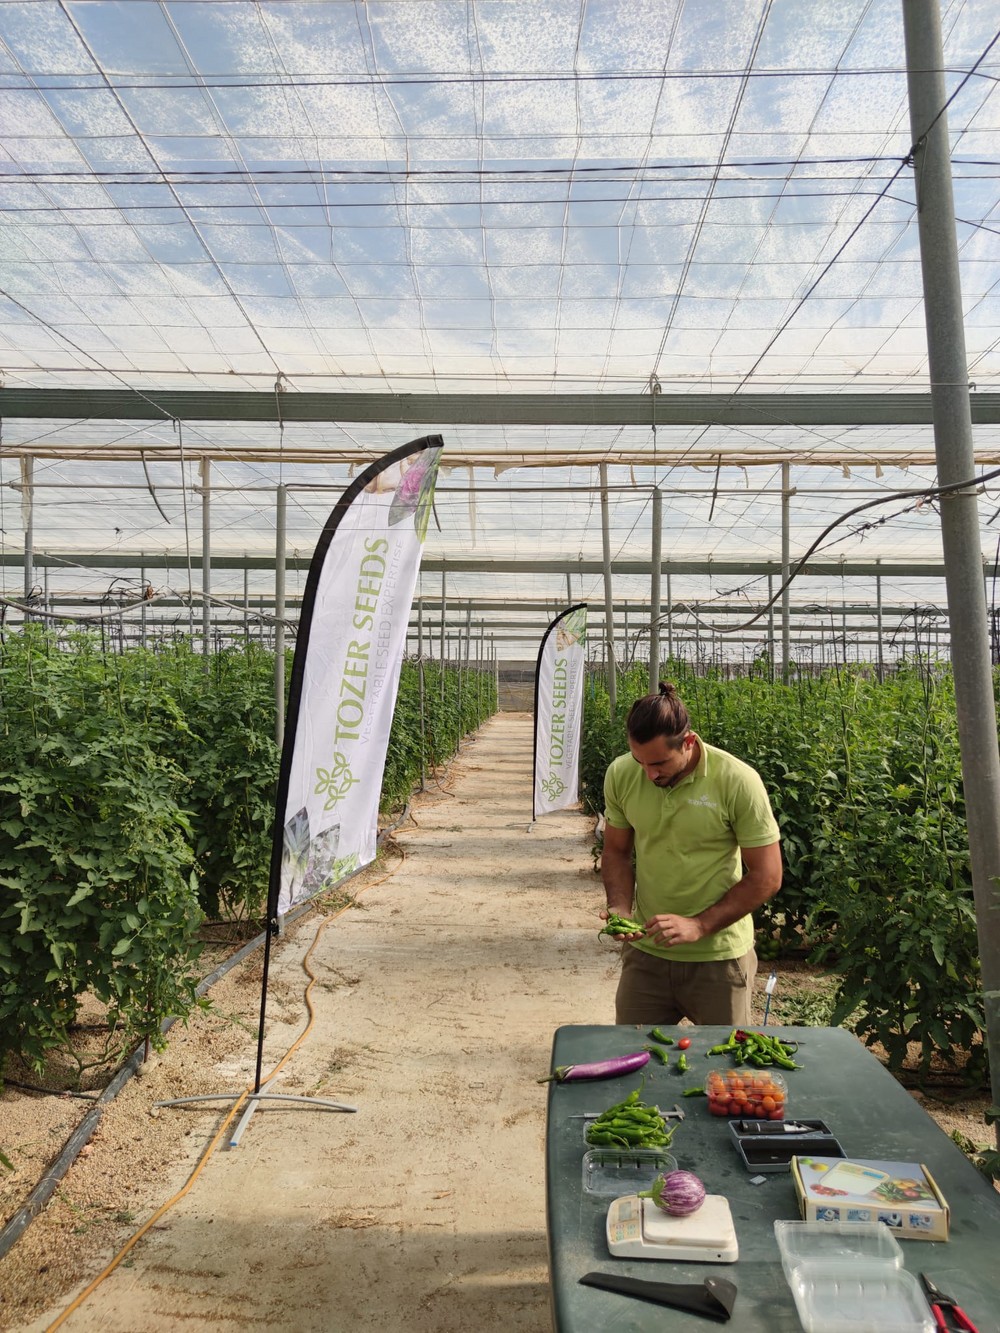 “En Almería tenemos un centro de I+D bajo invernadero para tomate, pimiento y berenjena, principalmente”